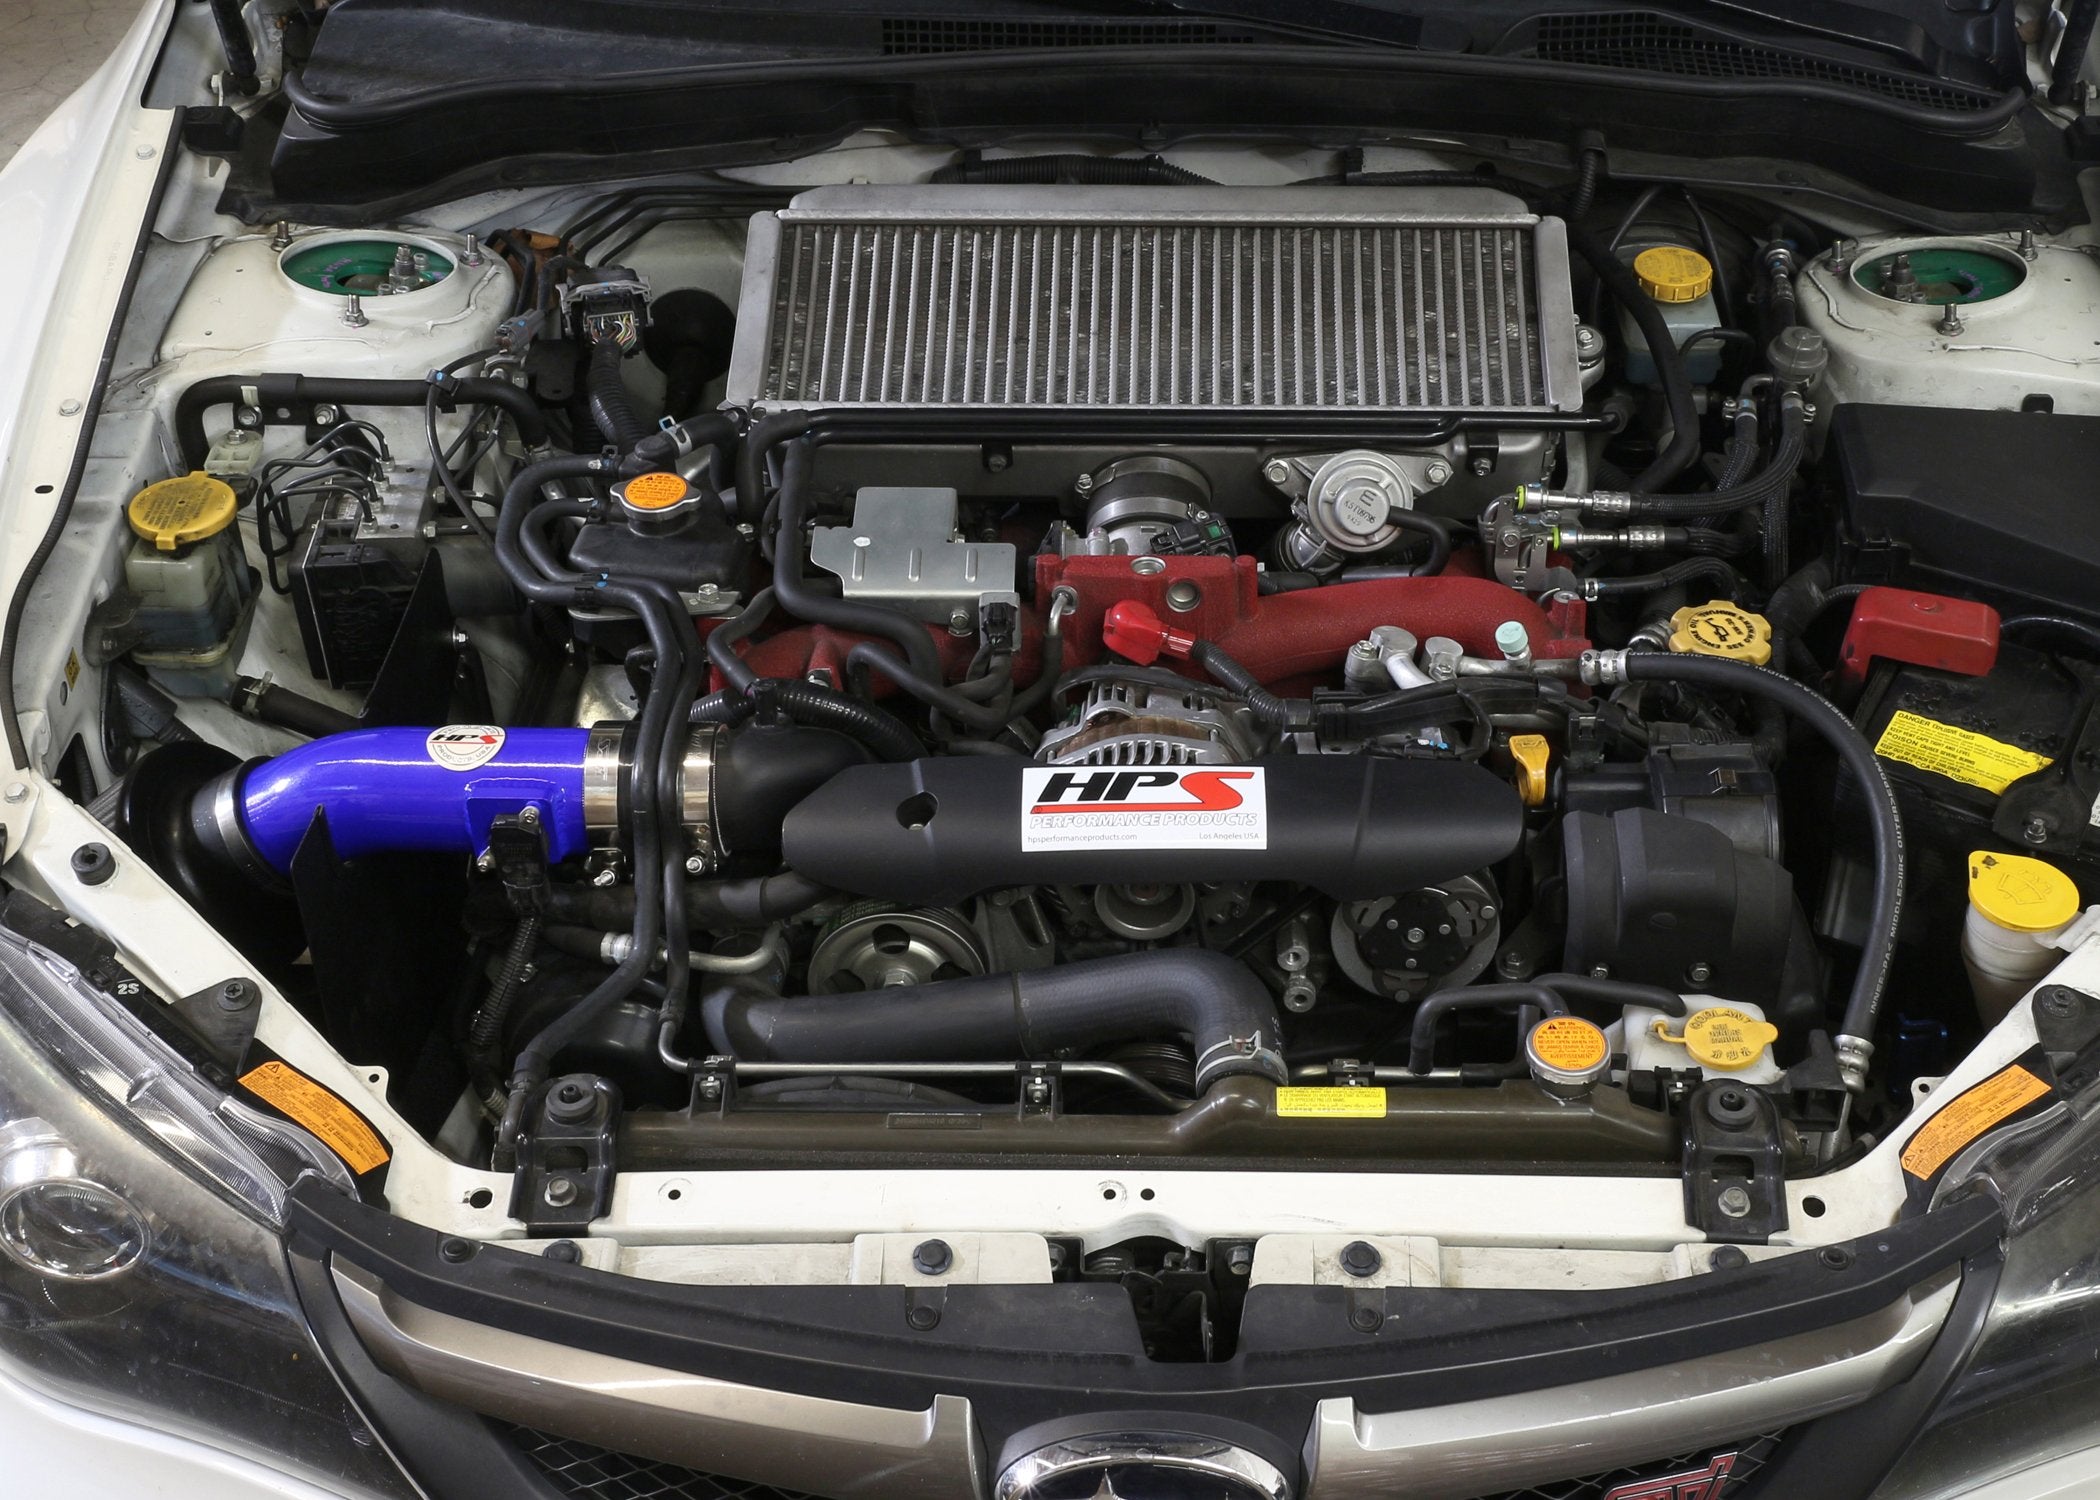 HPS Shortram Air Intake Kit 2008-2014 Subaru WRX STI 2.5L Turbo, Includes Heat Shield, 827-566